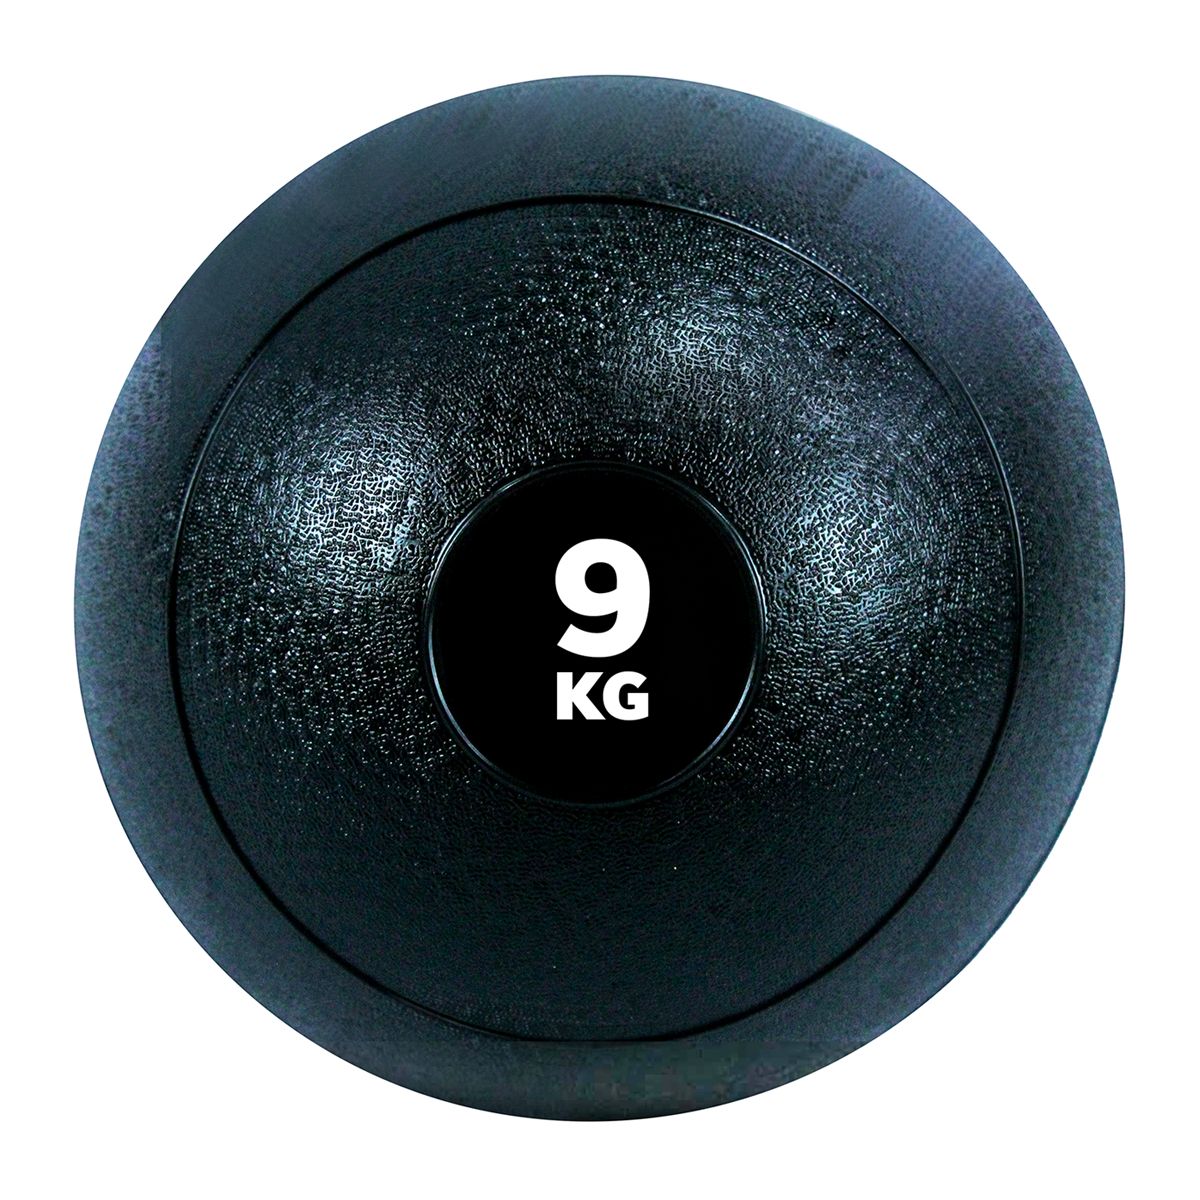 GladiatorFit Fitness-Beschwerungsball 'Slam Ball' aus Gummi | 9 KG